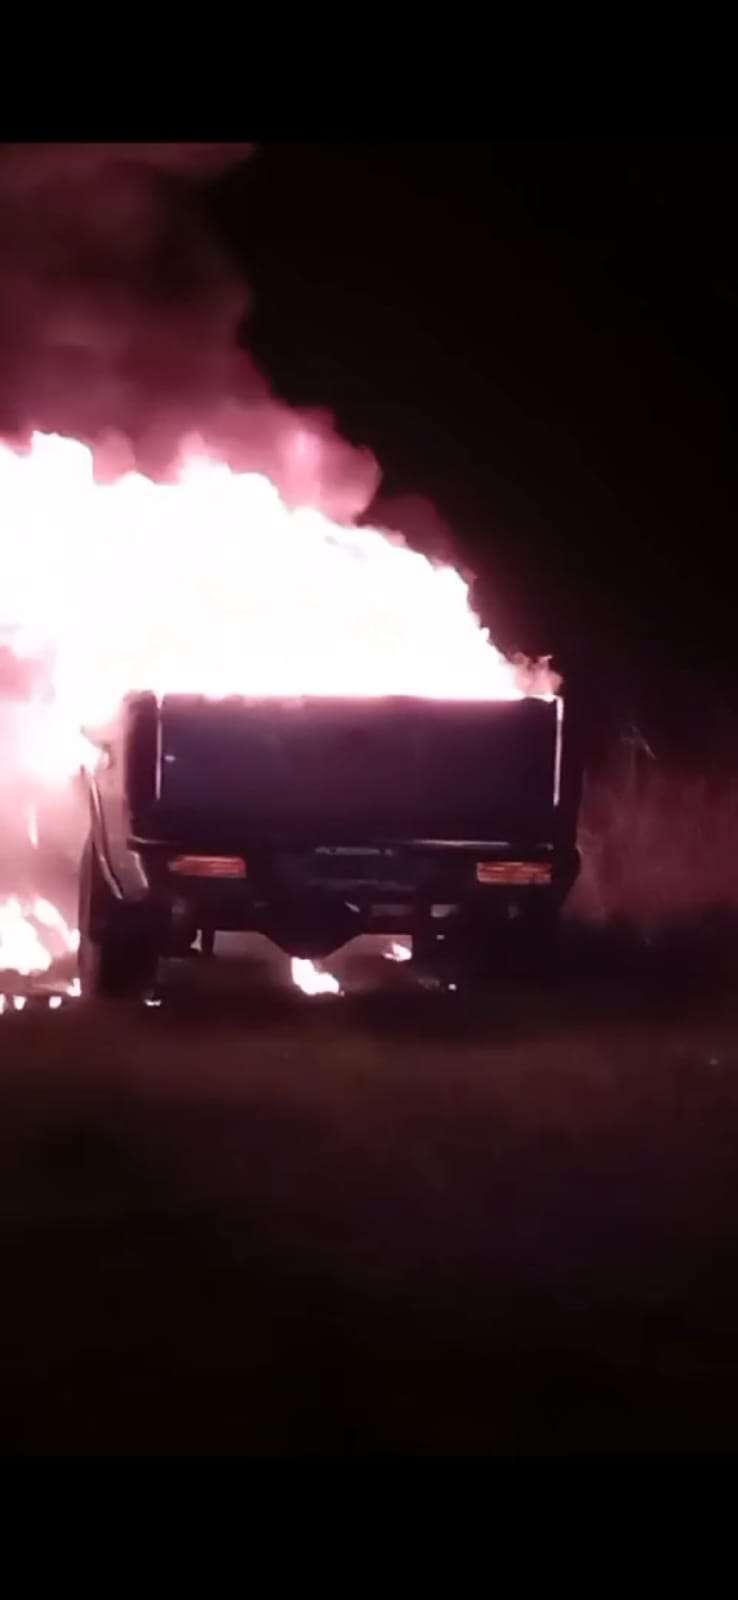 Incendio camioneta